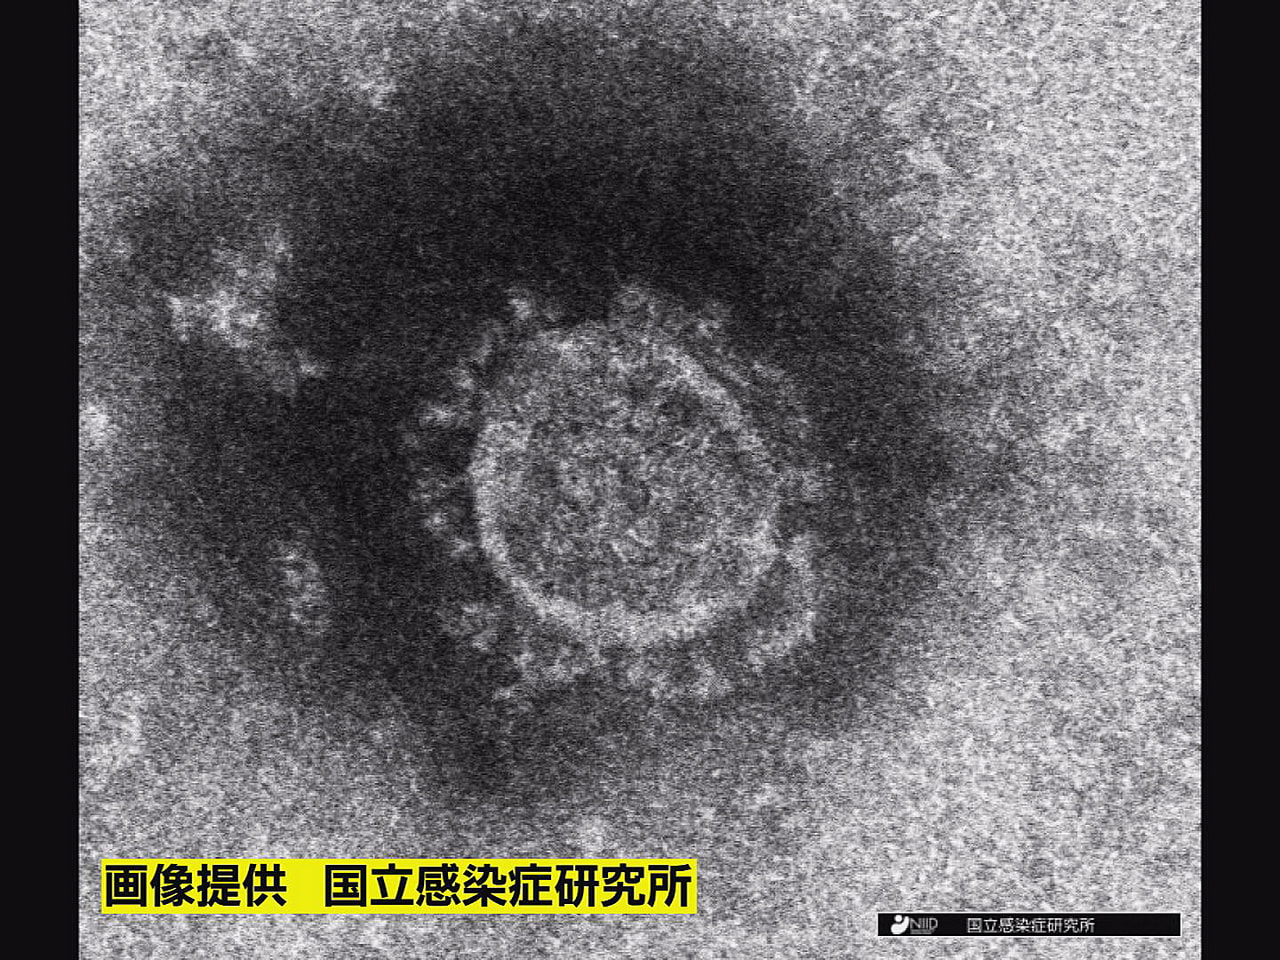 岐阜県は２１日、新型コロナウイルスの感染者が新たに２３４人確認されたと発表しまし...